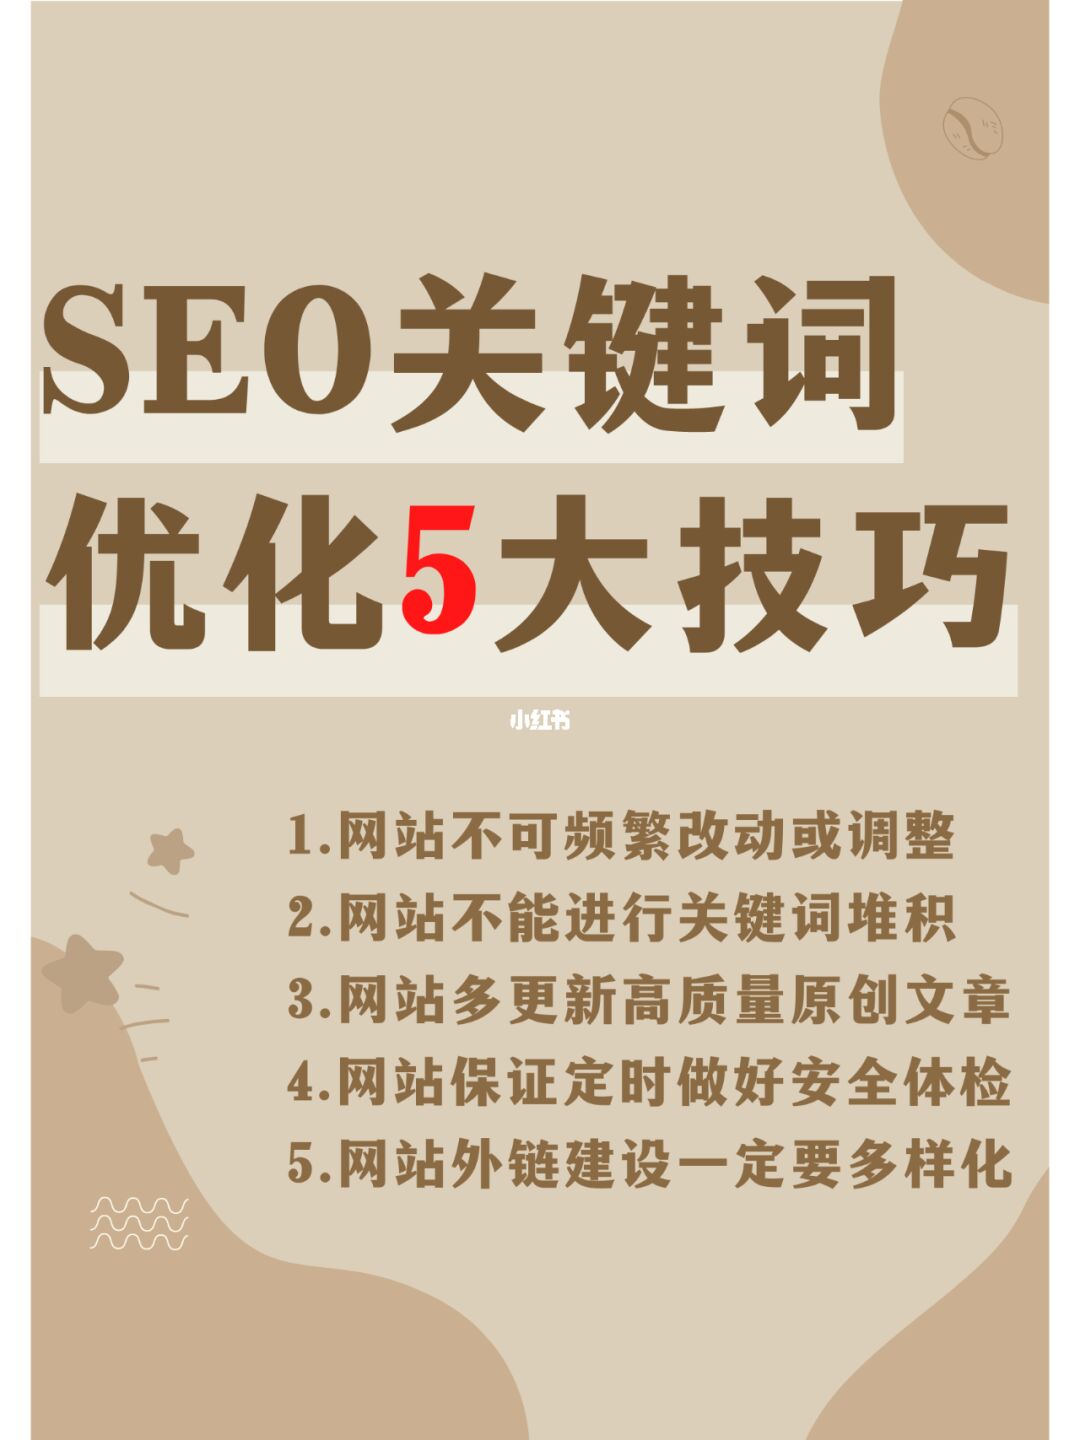 seo网站seo服务优化_seo网站优化解决_优化网站seo网站系统平台